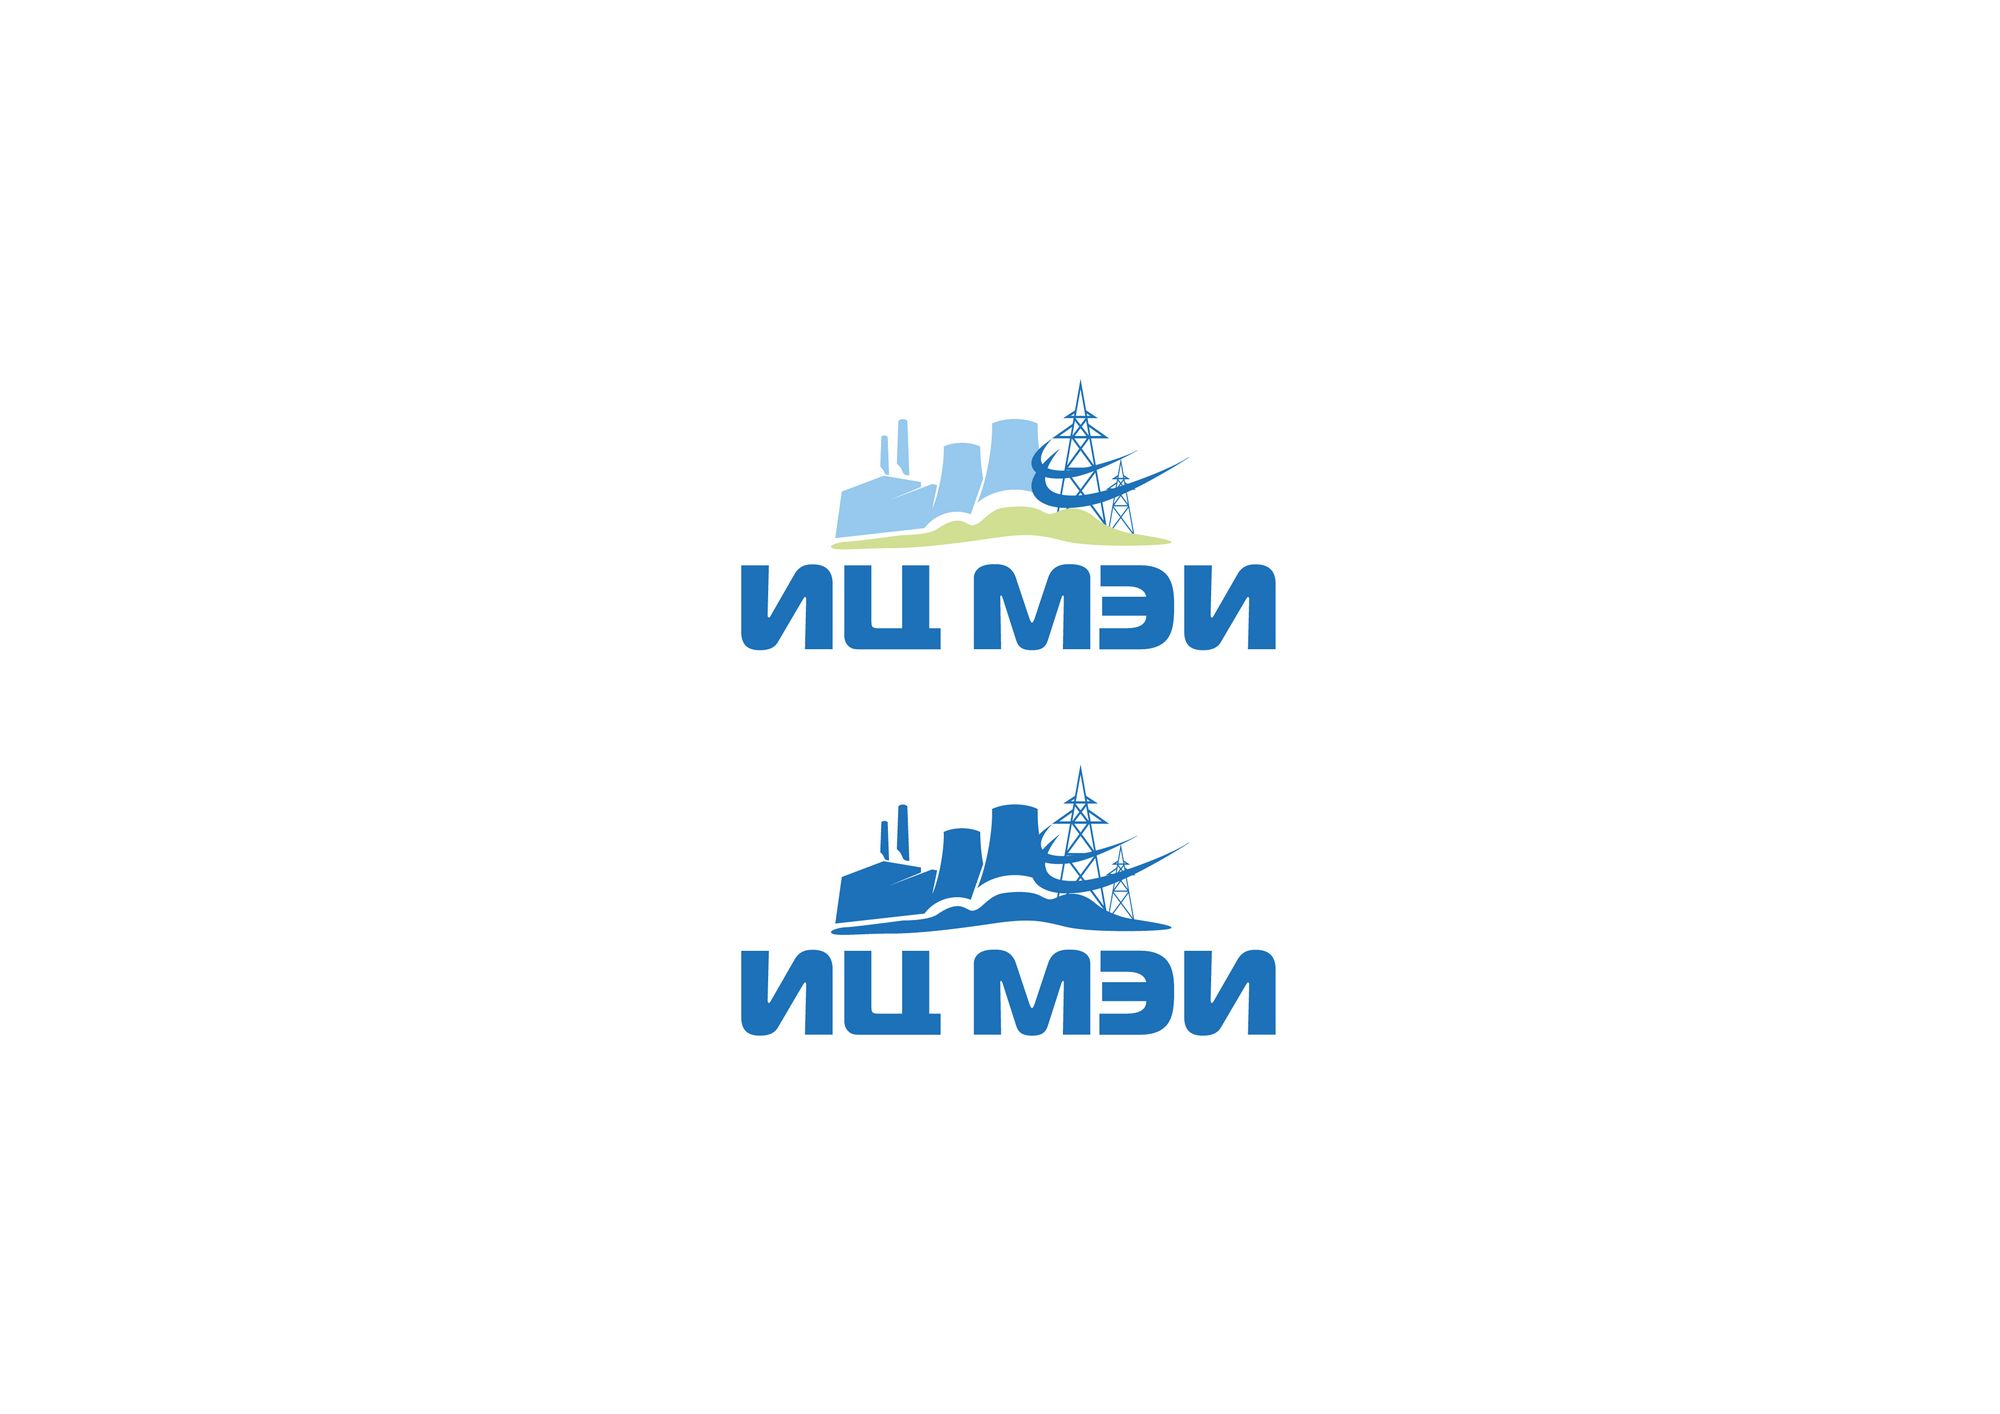 Логотип для ИЦ МЭИ / EC MEI (Инжиниринговый Центр МЭИ) - дизайнер kirilln84